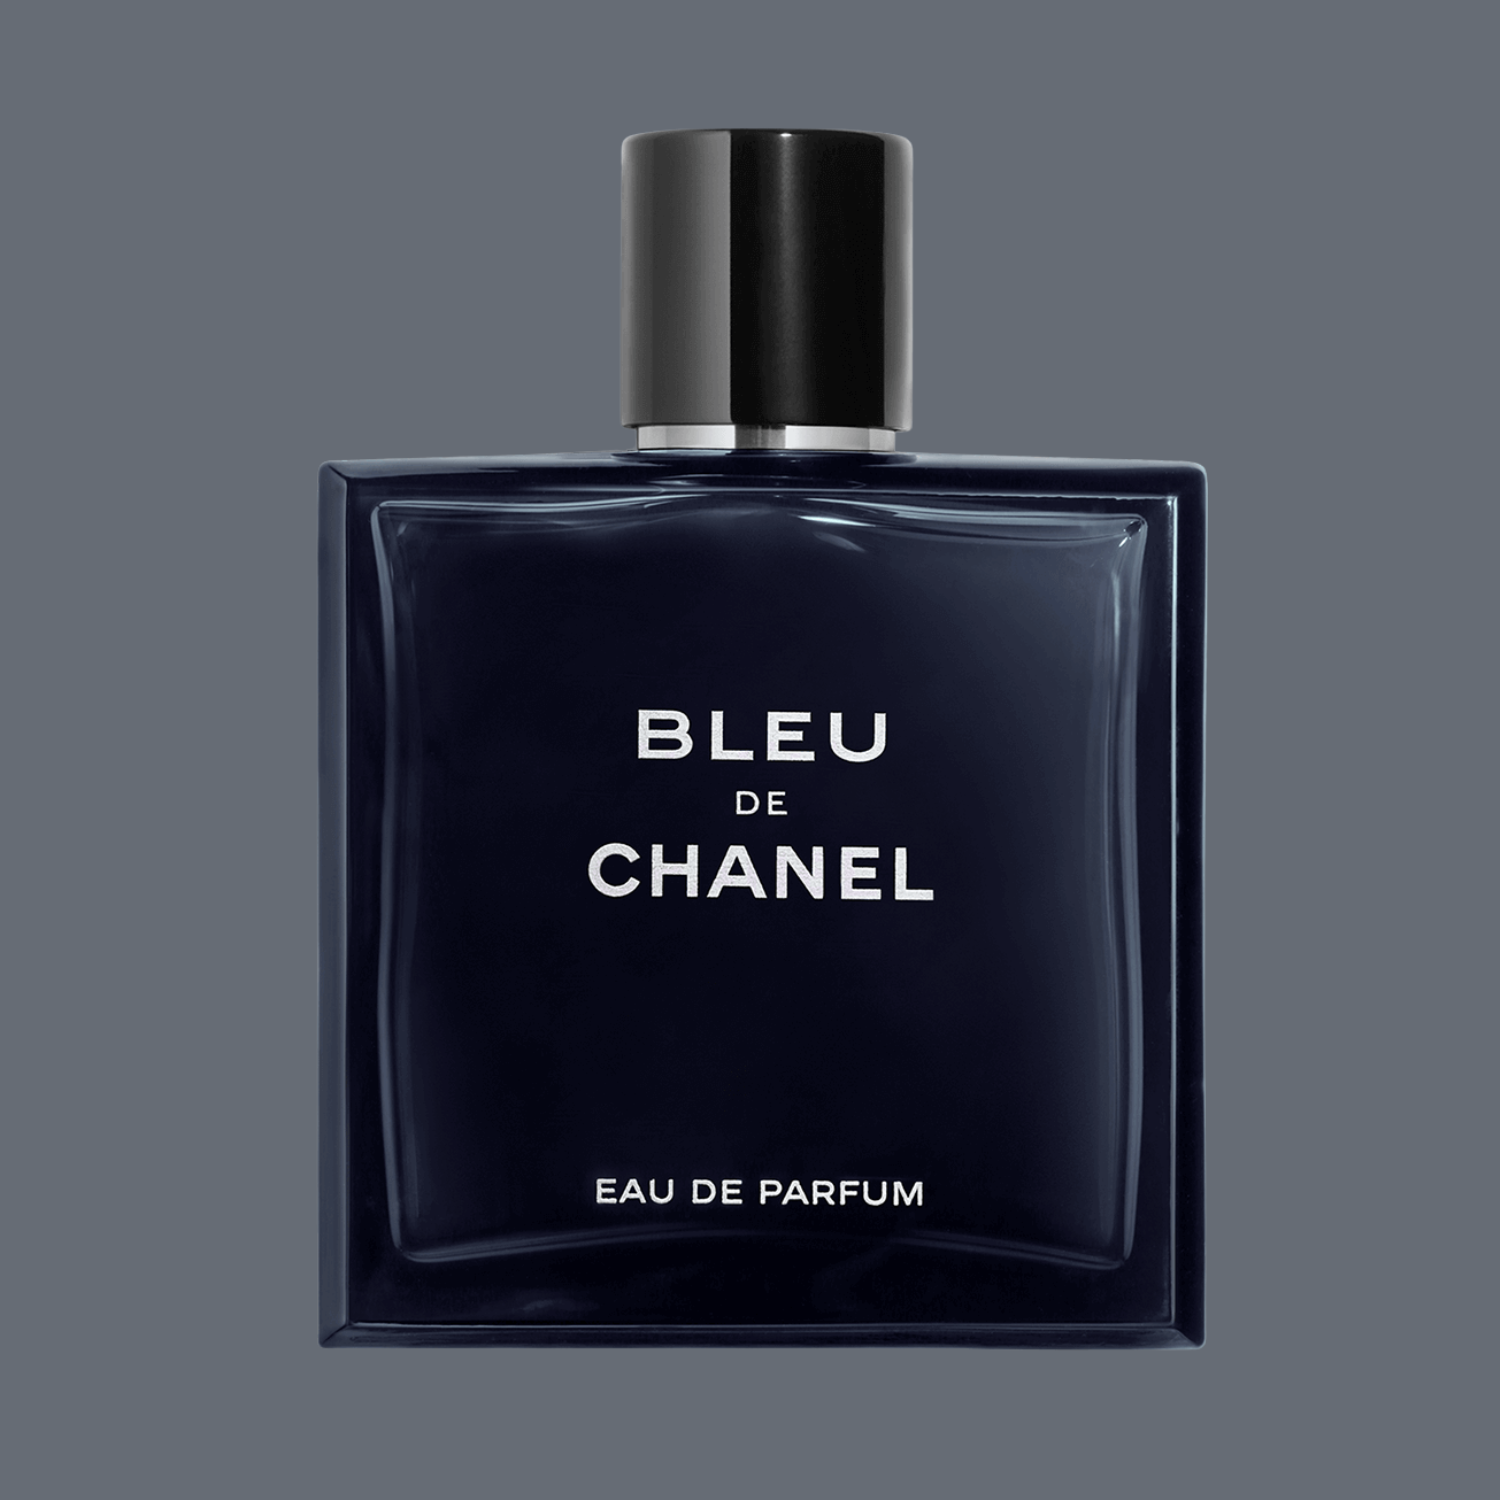 Best Chanel Fragrance For Men | SOKI LONDON